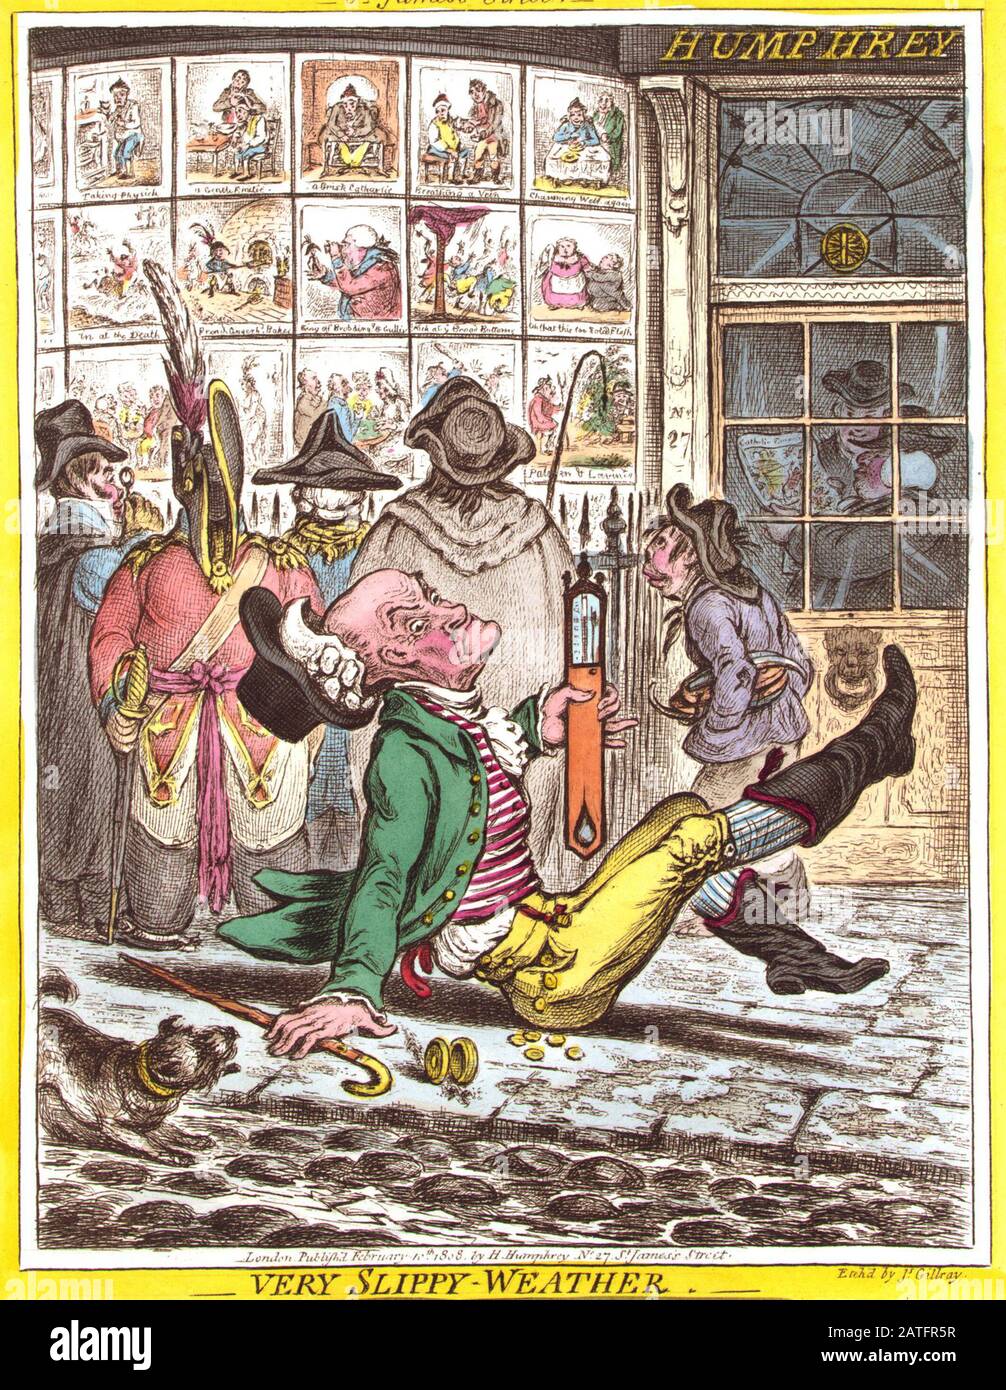 Very Slippy-Weather (1808) von James Gillray. Cartoon zeigt einen älteren Mann, der auf dem Bürgersteig vor Humphreys Druckanstalt in der St. James's Street, London, gerutscht und gestürzt ist. Er hält ein Thermometer, das er aufrecht hält, hinter ihm befinden sich fünf Personen, die von Humphrey gedruckte Karikaturen betrachten, die in den Schaufenstern ausgestellt sind Stockfoto